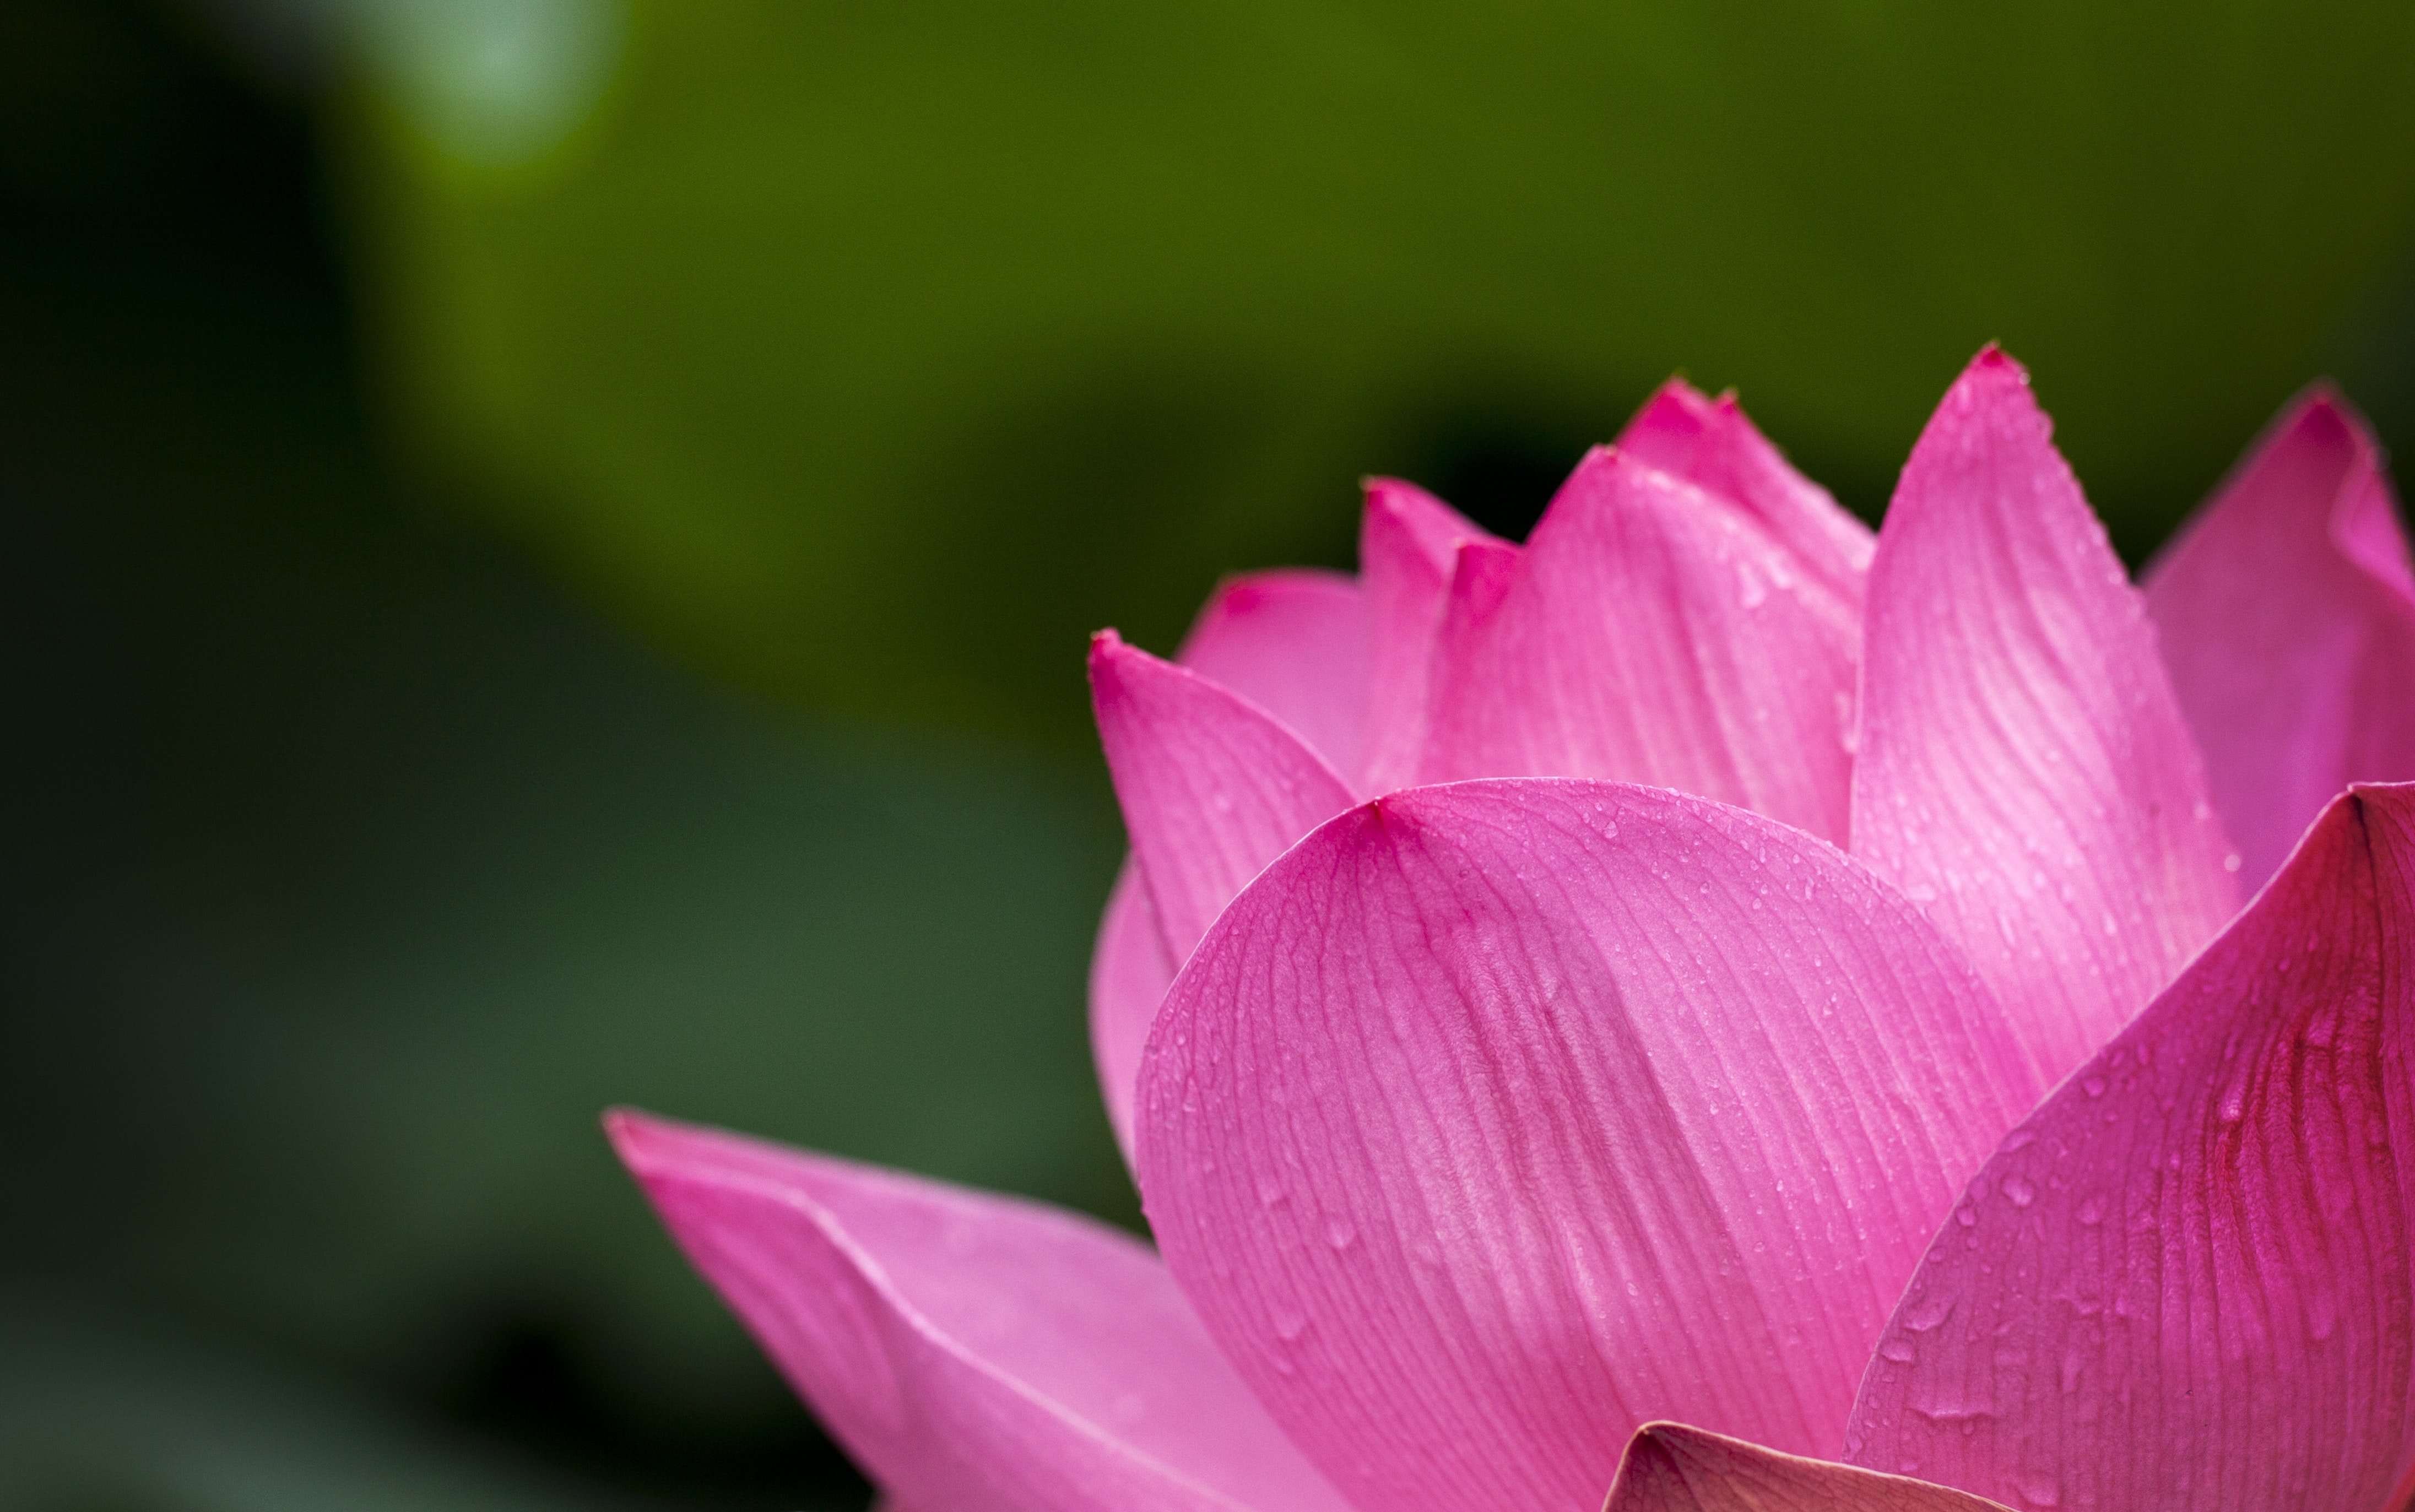 Lotus flower blooming during daytime photo